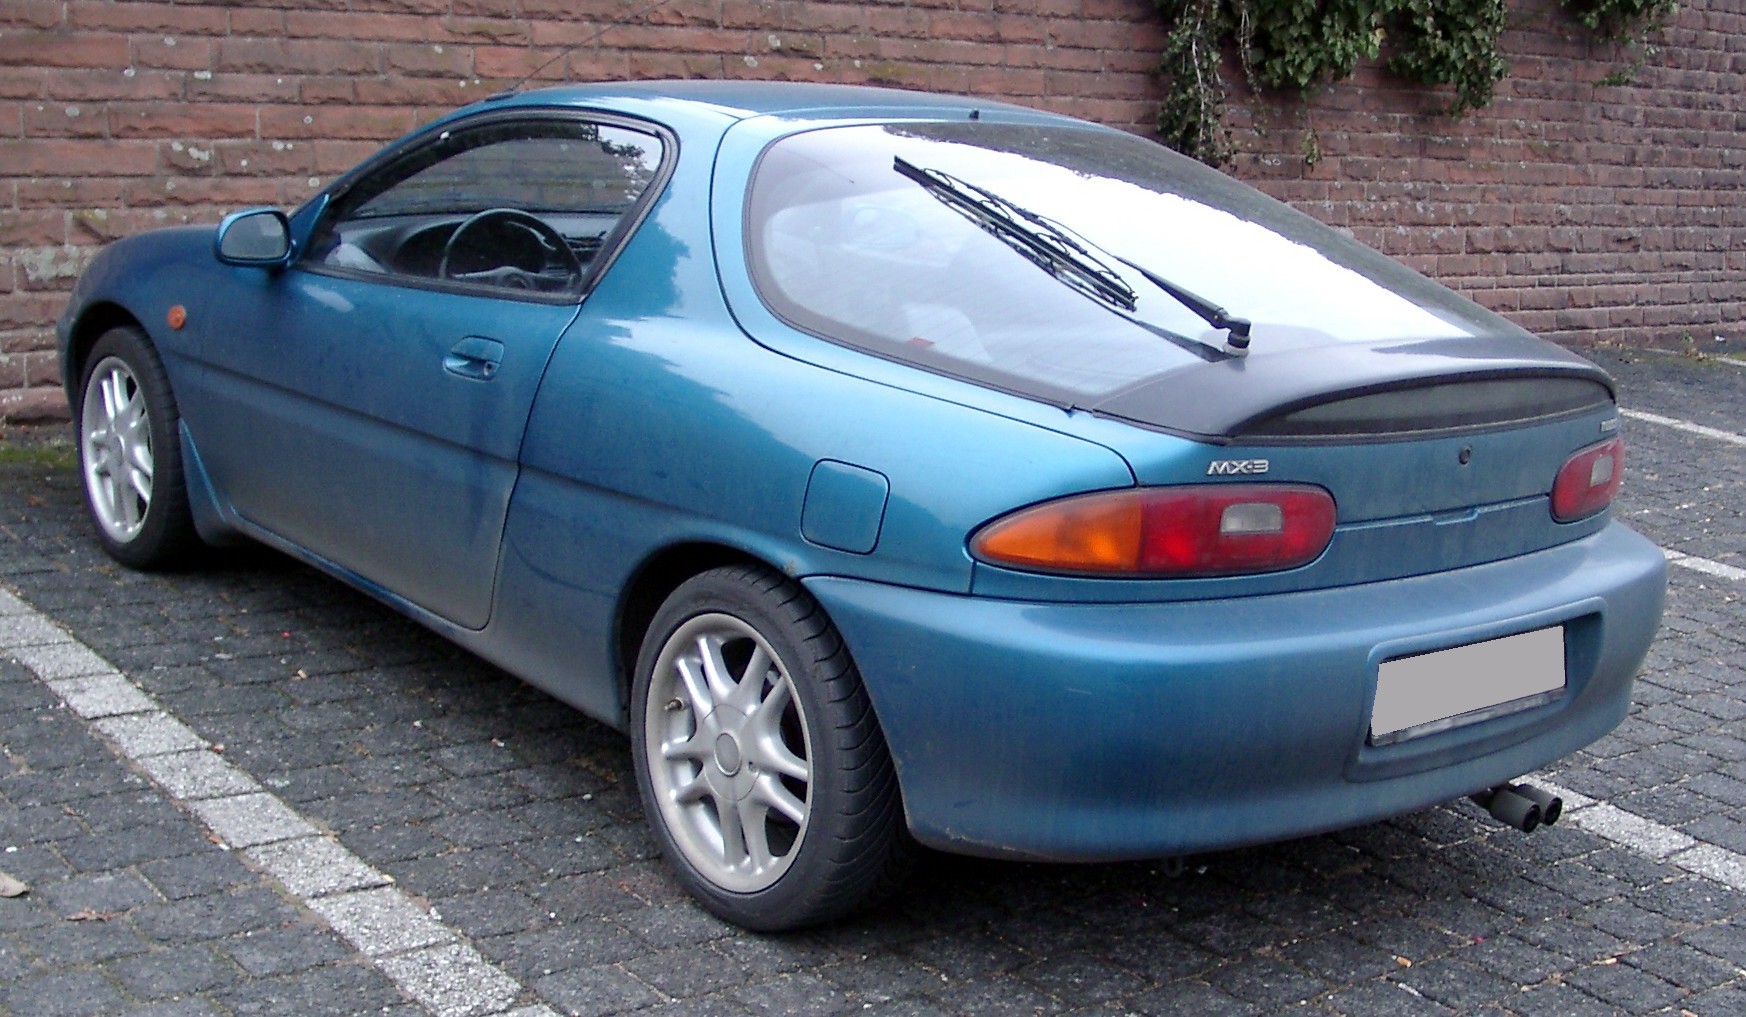 File:Mazda MX-3 rear 20080103.jpg